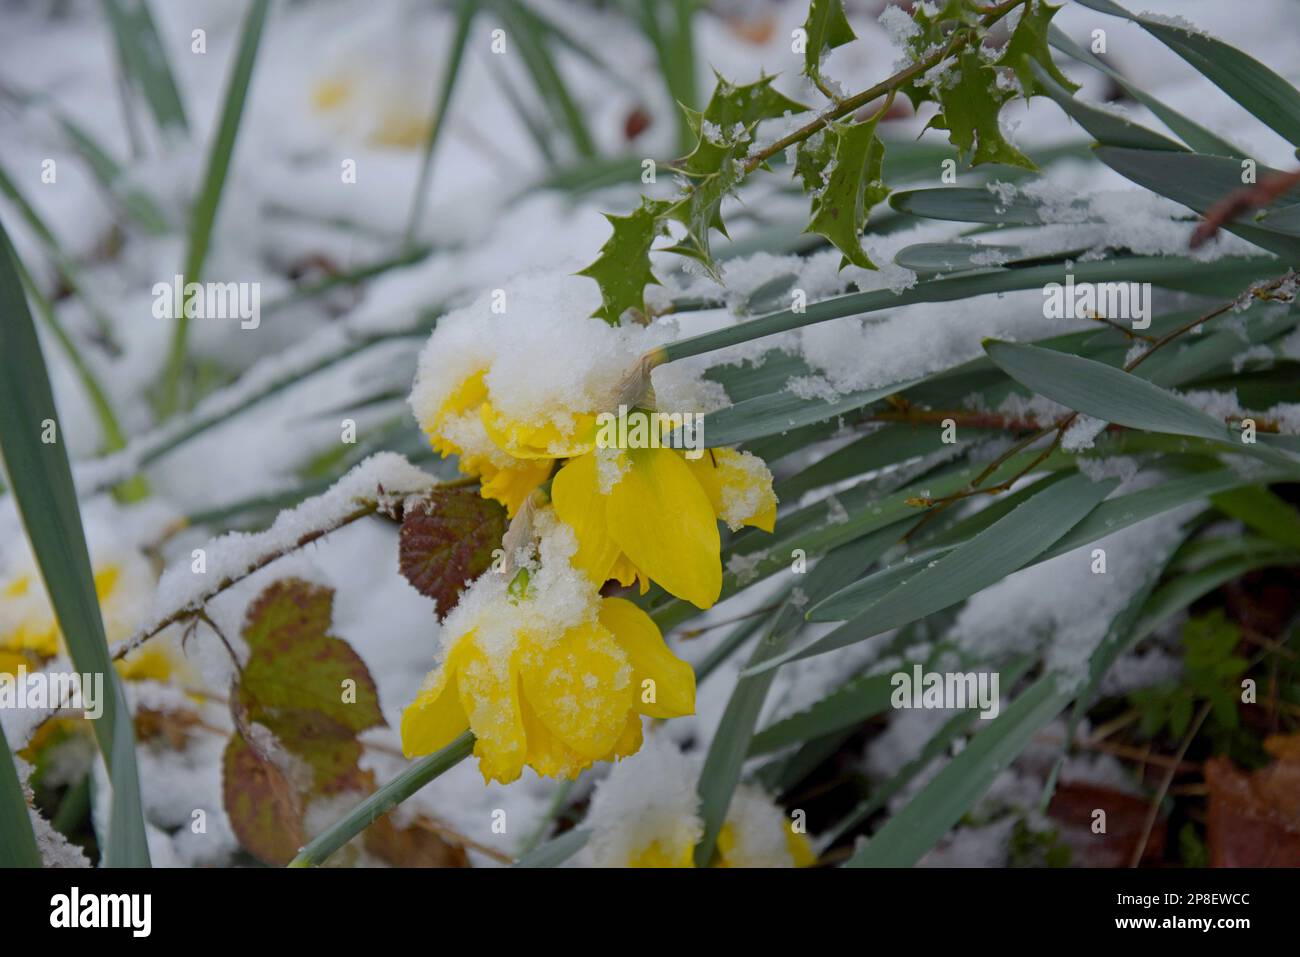 Shropshire, Regno Unito. 9th marzo 2022. Più neve ha continuato a cadere durante la notte, lasciando gran parte dello Shropshire coperto in circa 2 pollici (5cm) di neve e temperature che rimangono appena sotto congelamento. Le narcisi avevano già cominciato a fiorire prima che la neve cadesse. G.P.Essex/Alamy Live News Foto Stock